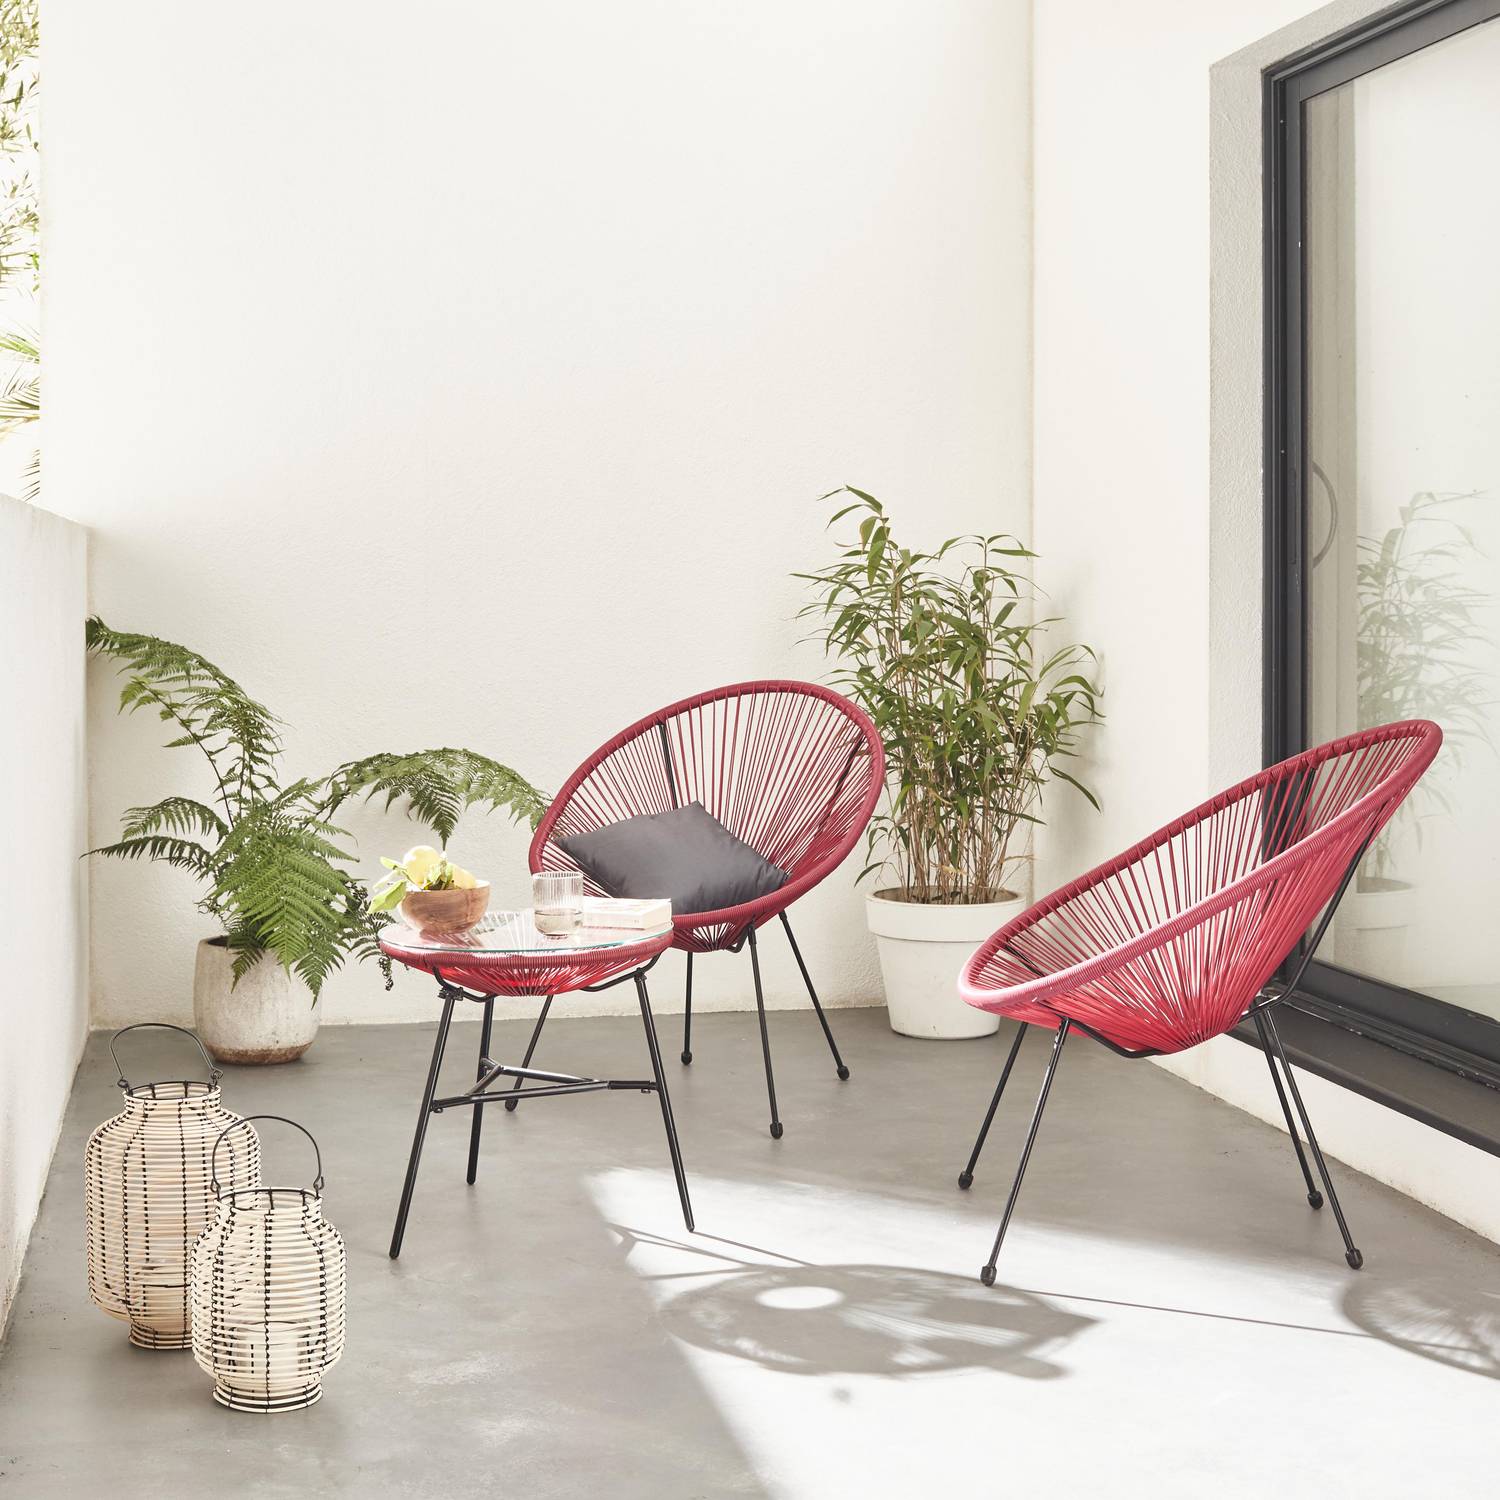 Set mit 2 eiförmigen ACAPULCO-Sesseln mit Beistelltisch - bordeaux- 4-beinige Sessel im Retro-Design mit Couchtisch, Kunststoffschnur Photo1